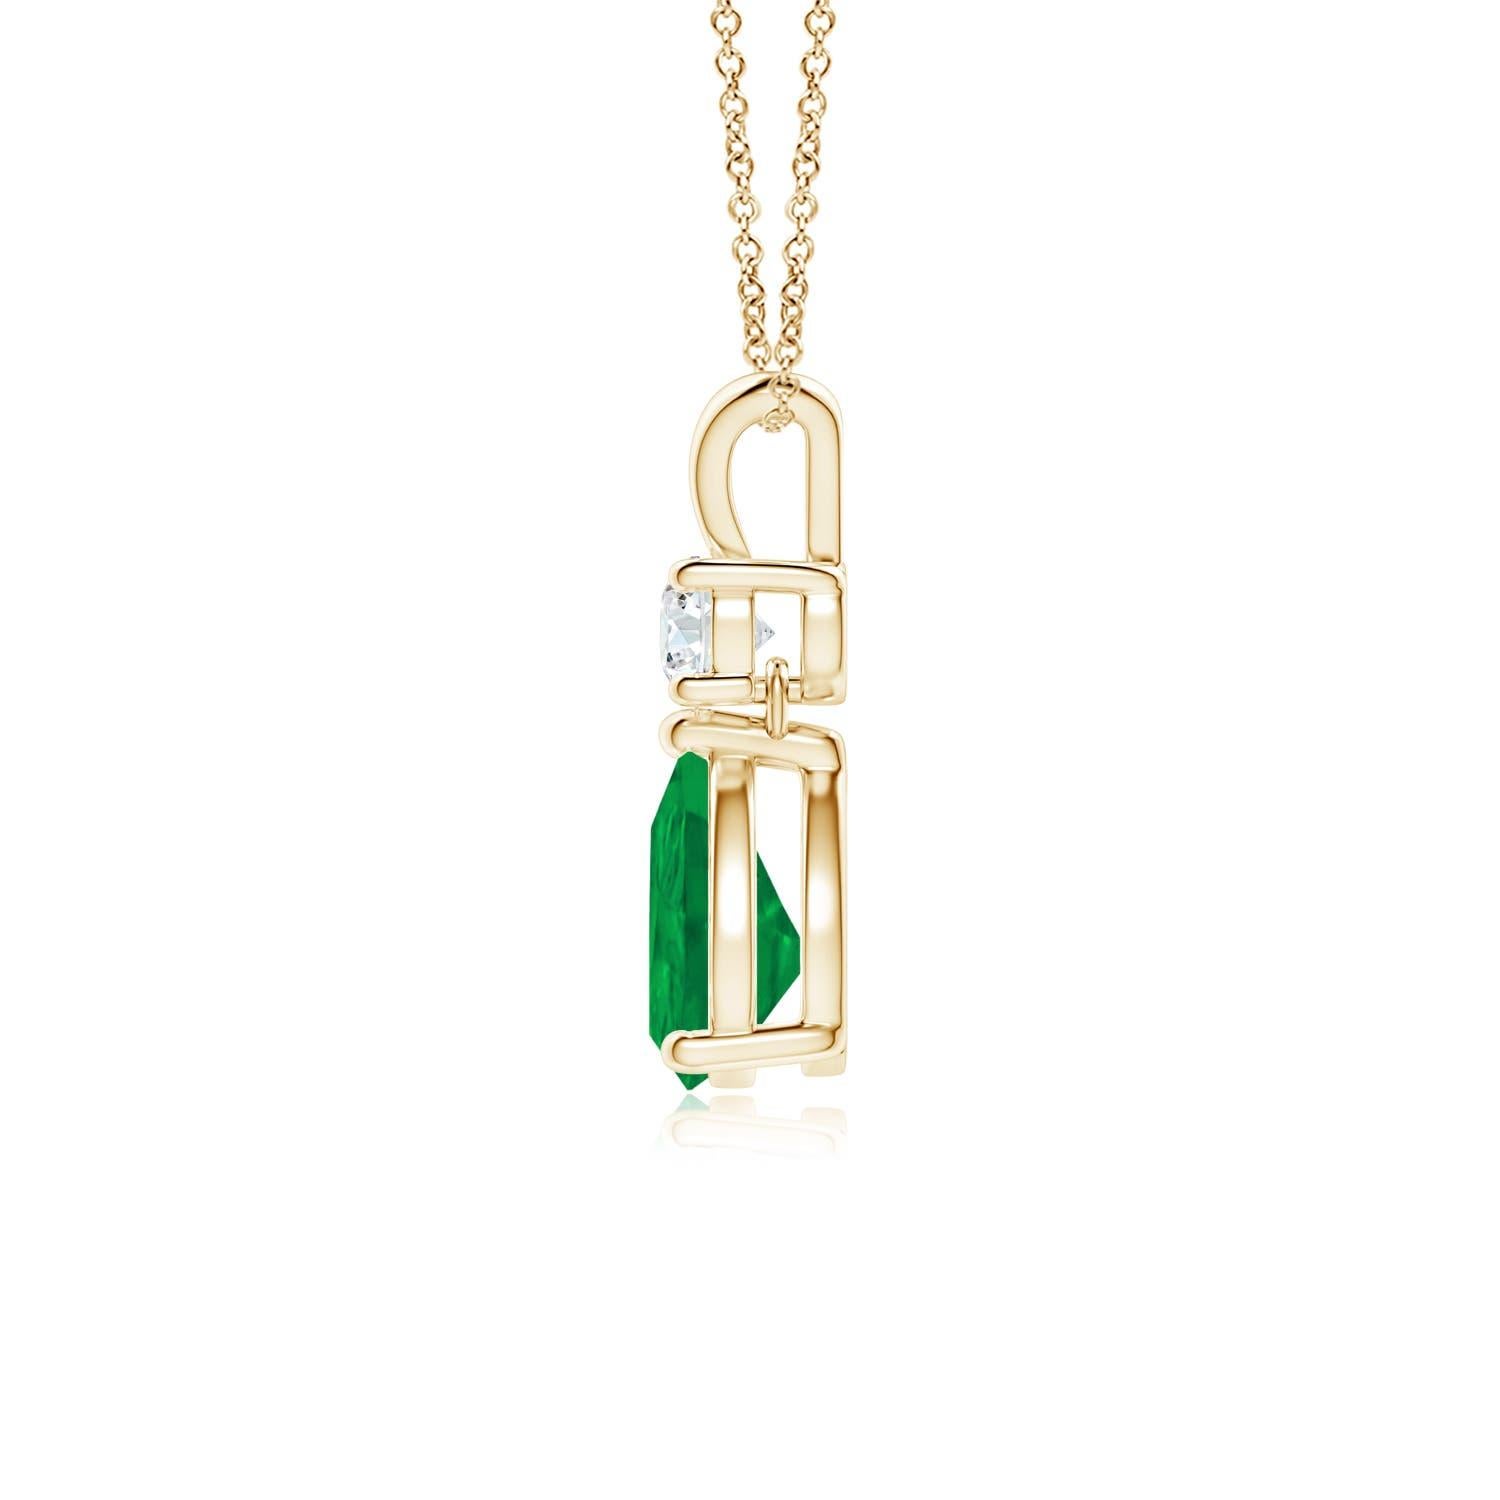 Ein leuchtend grüner Smaragd im Birnenschliff baumelt an einem funkelnden weißen Diamanten an diesem eleganten Tropfenanhänger. Der glänzende V-Balken verleiht diesem Anhänger aus 14 Karat Gelbgold mit Smaragd und Diamant seine Schönheit. Er